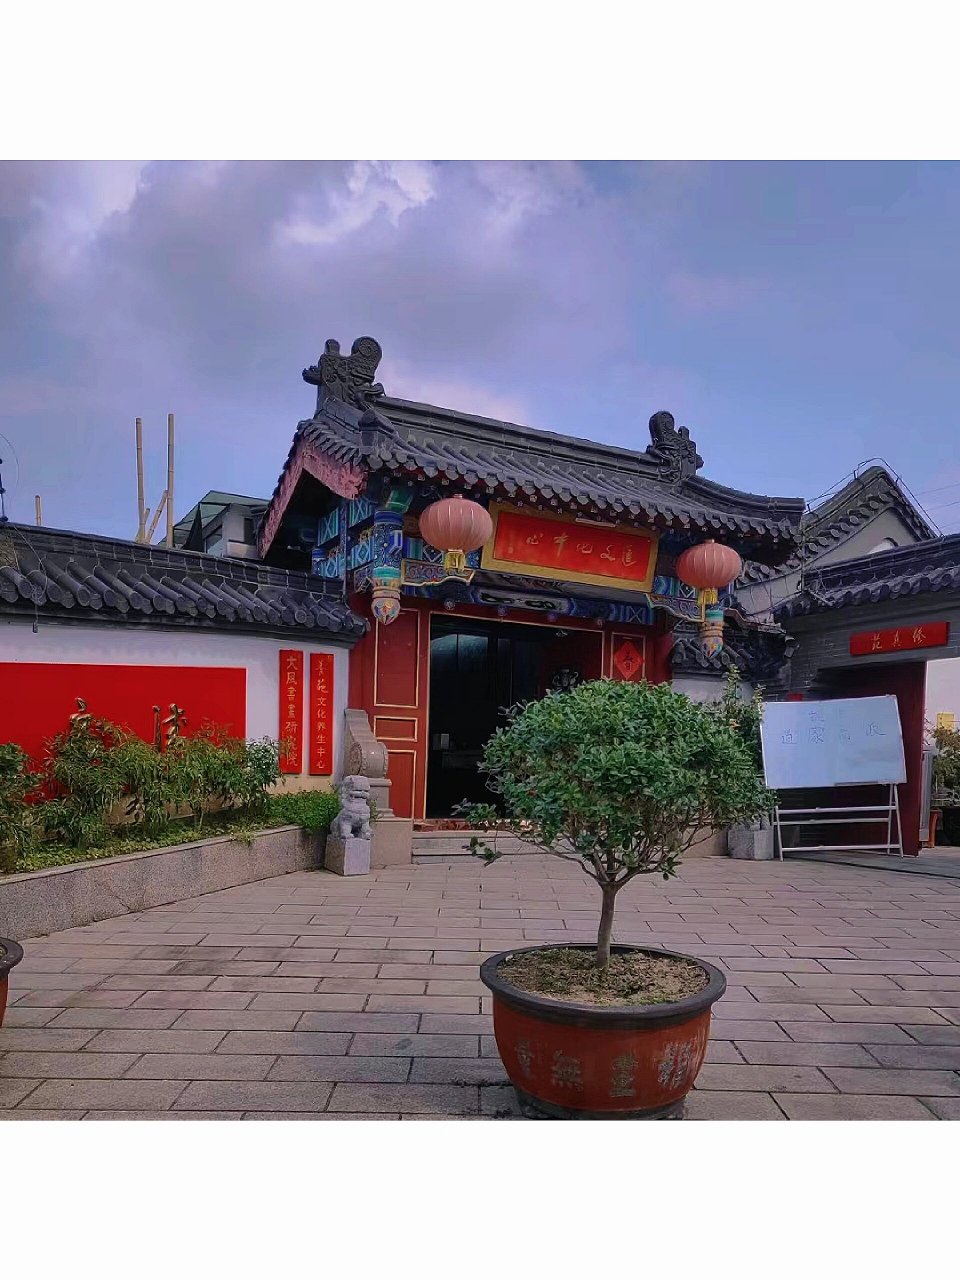 徐州三清观 徐州的三清观在徐州市云龙山北部山脚下,是徐州道教文化